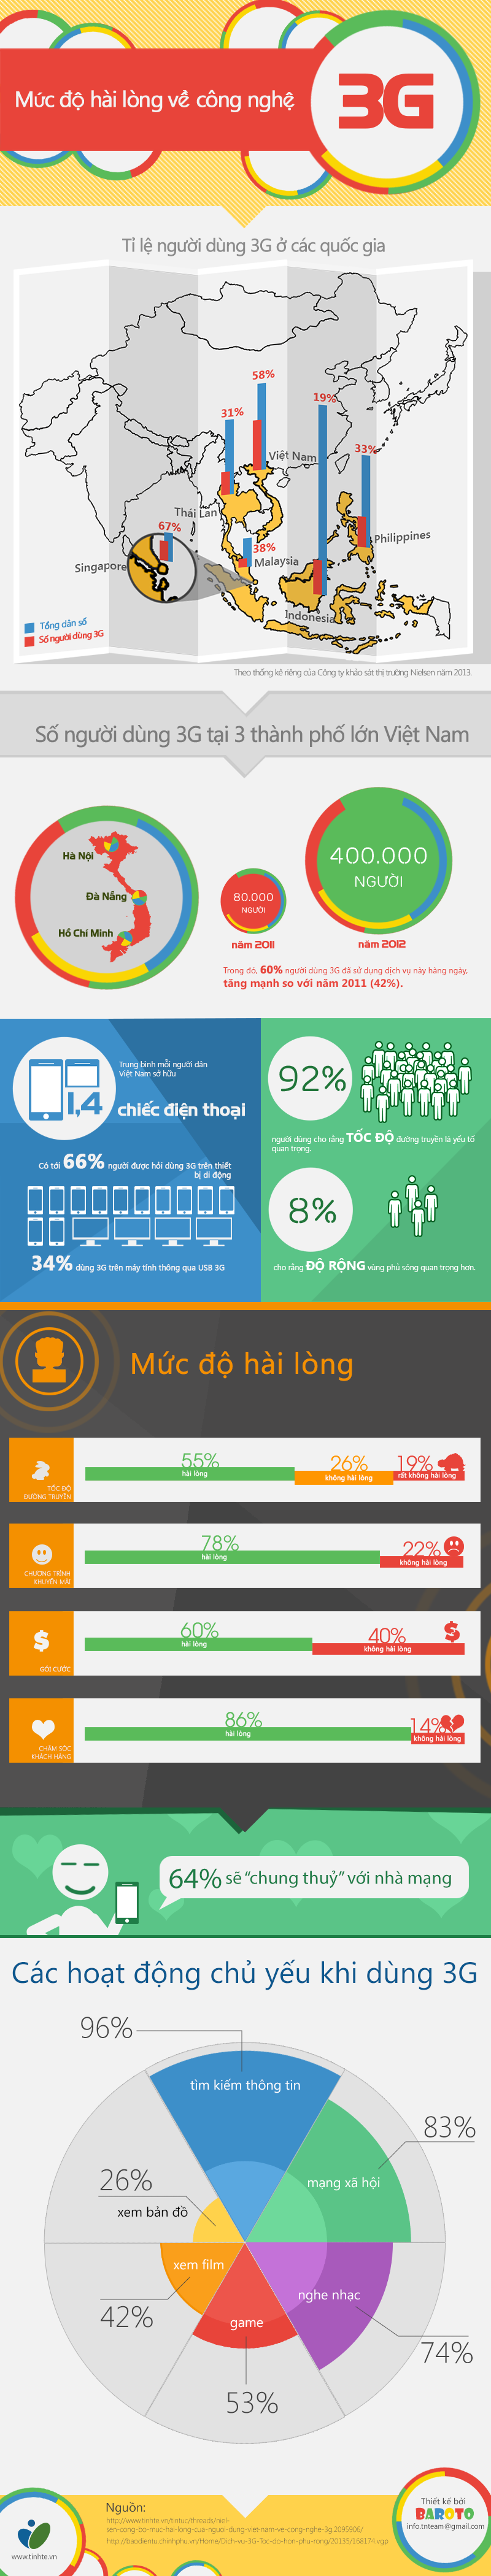 [INFGOGRAPHIC] Khảo sát mức độ hài lòng về 3G ở Việt Nam